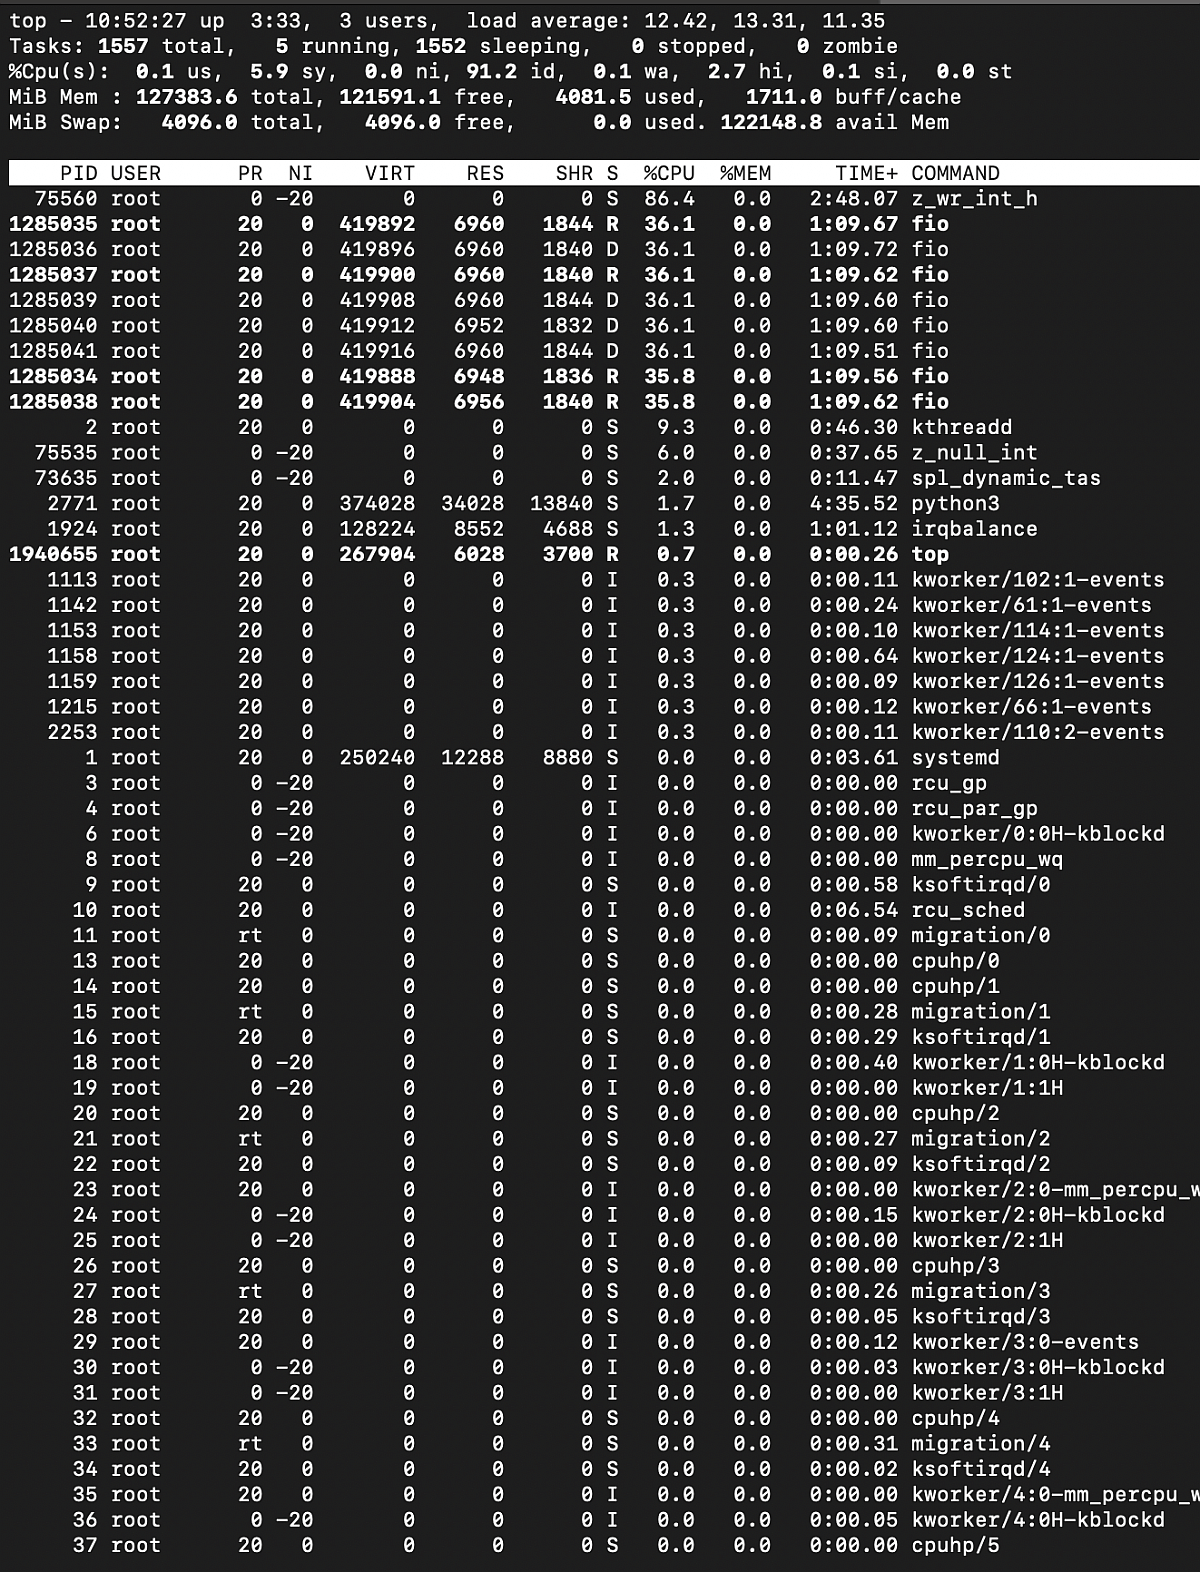 top output, zfs RAIDZ2 under sequential write load